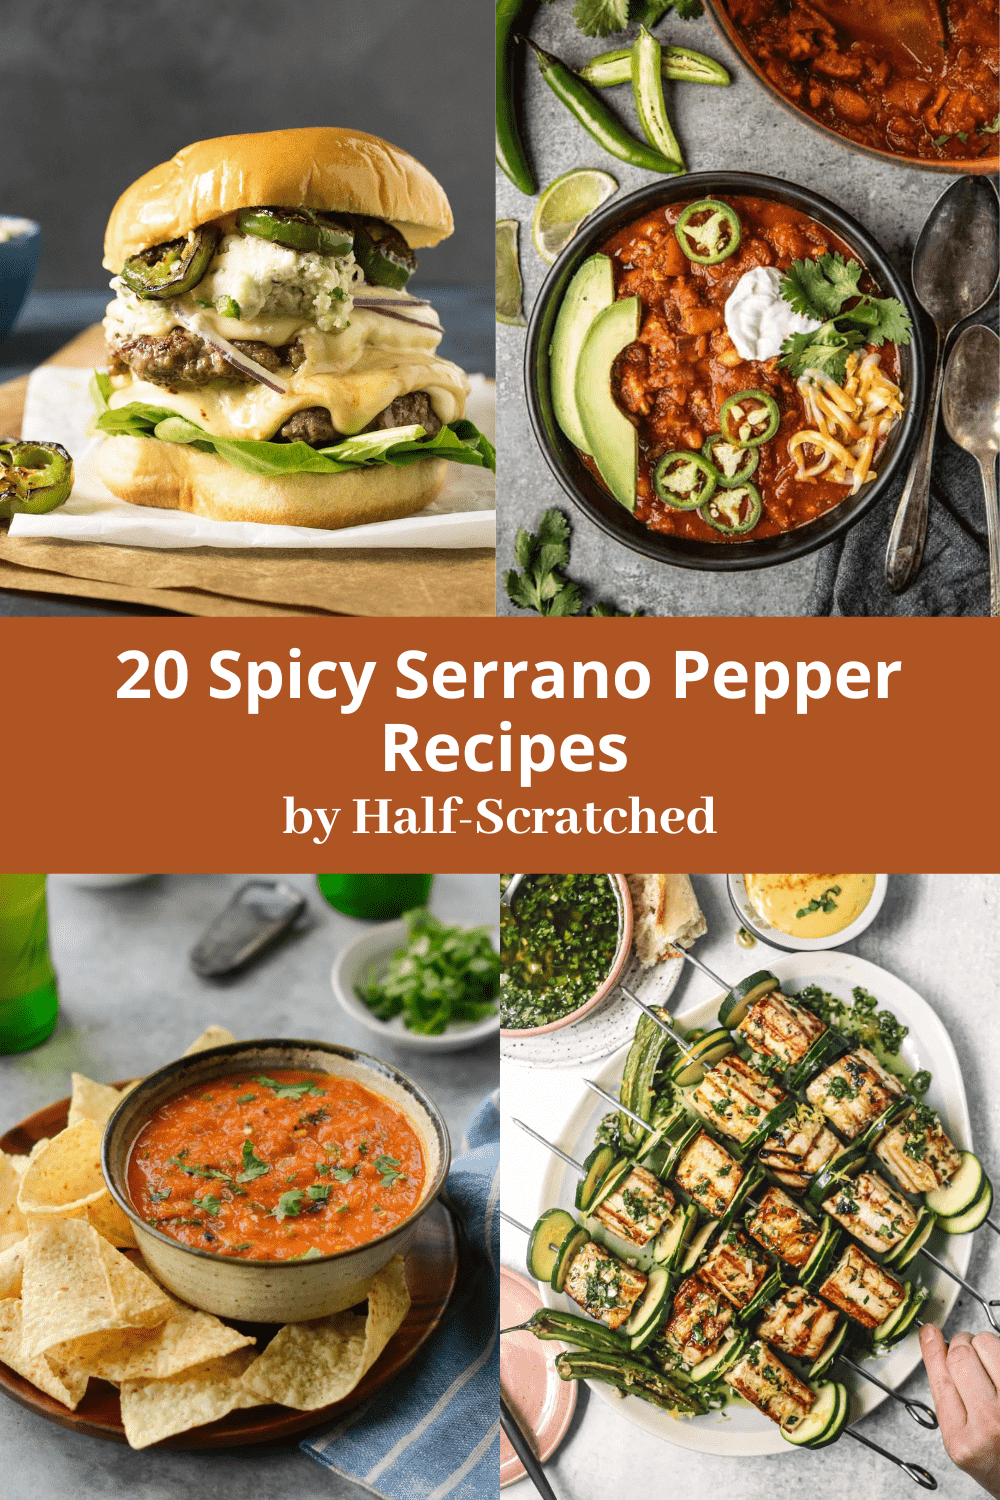 20 Spicy Serrano Pepper Recipes